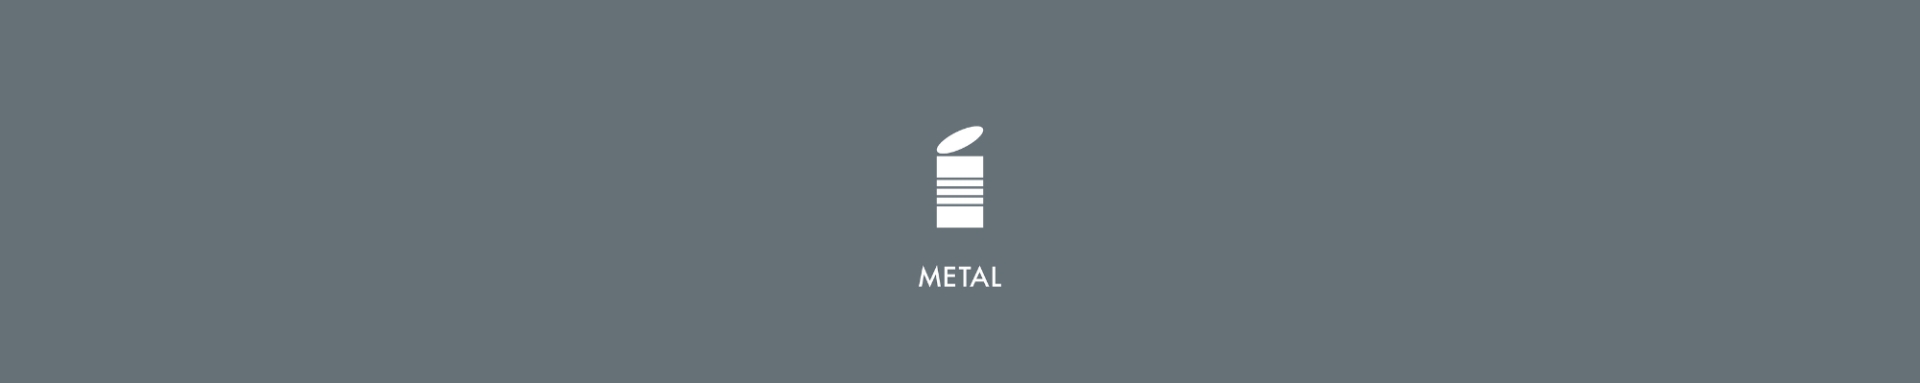 grå banner med piktogram af metal